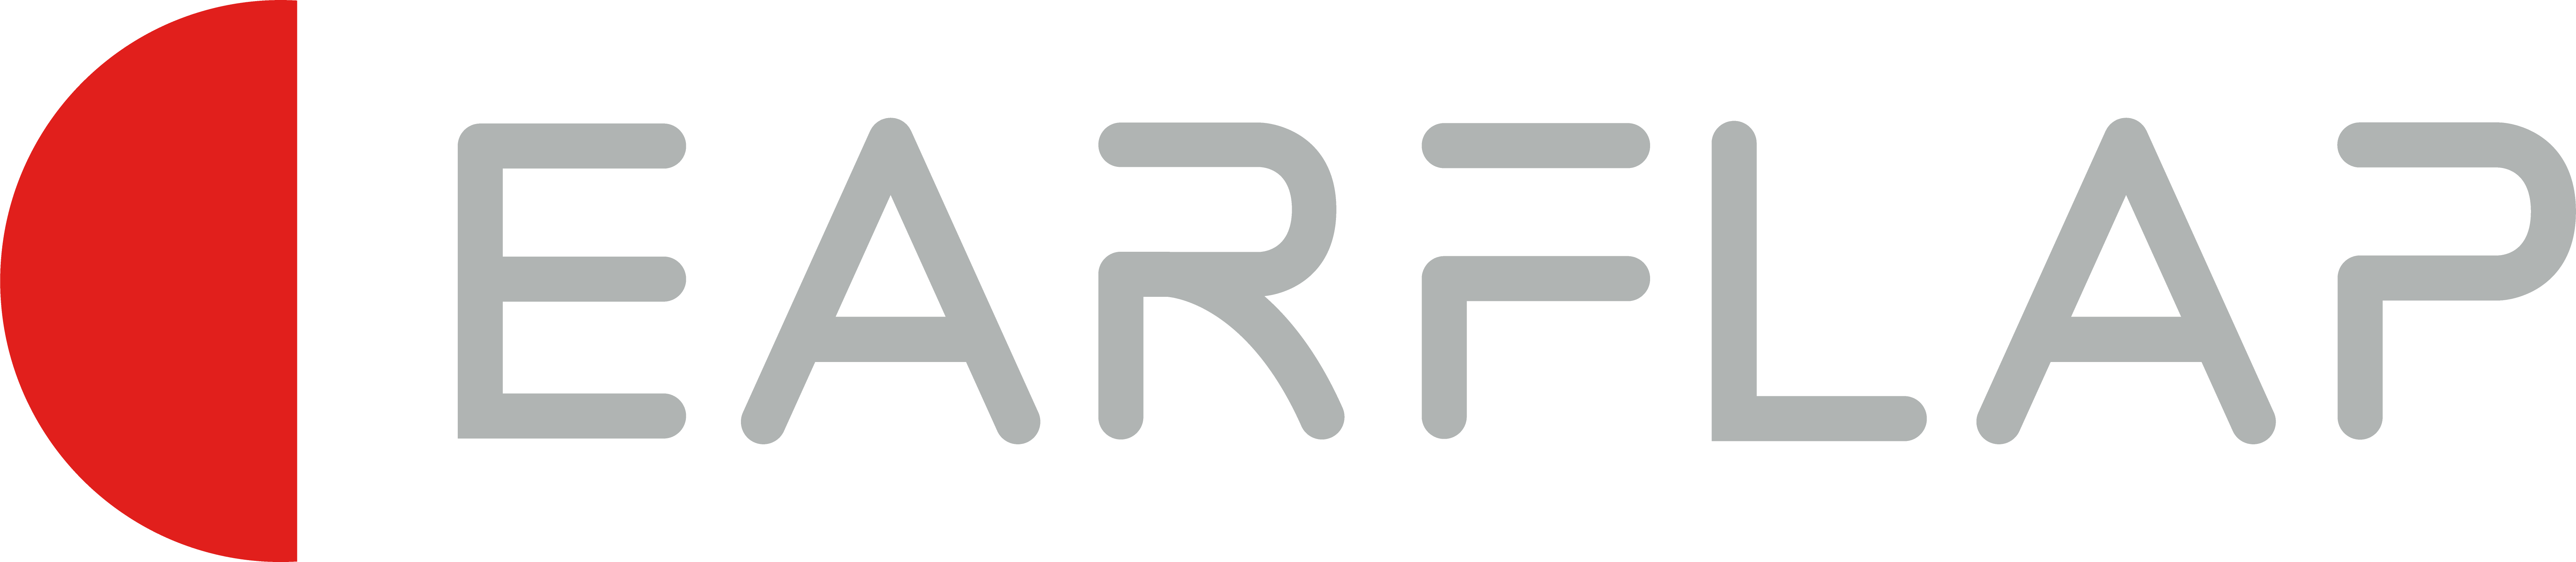 Logo Ear Flap gris